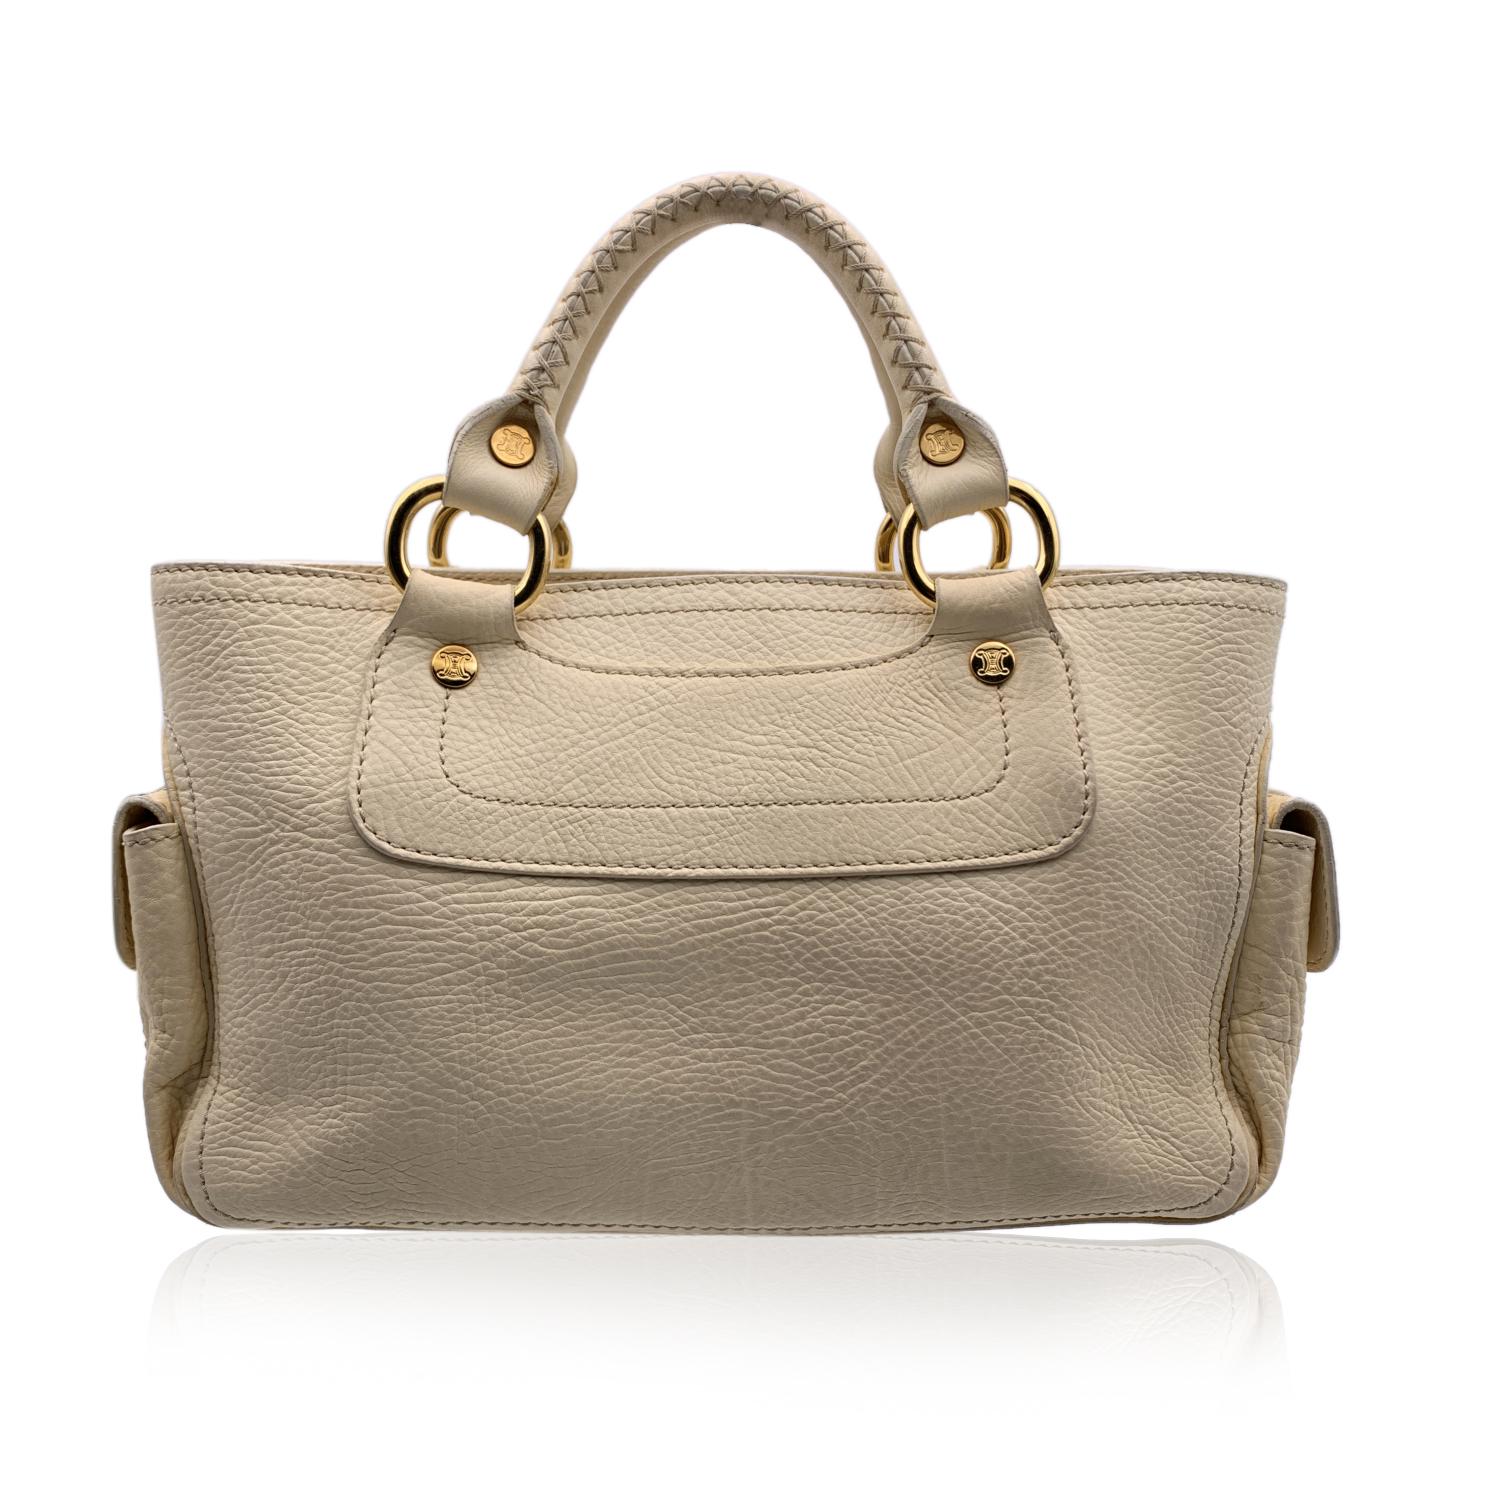 Women's Celine Beige Leather Boogie Tote Bag Satchel Handbag